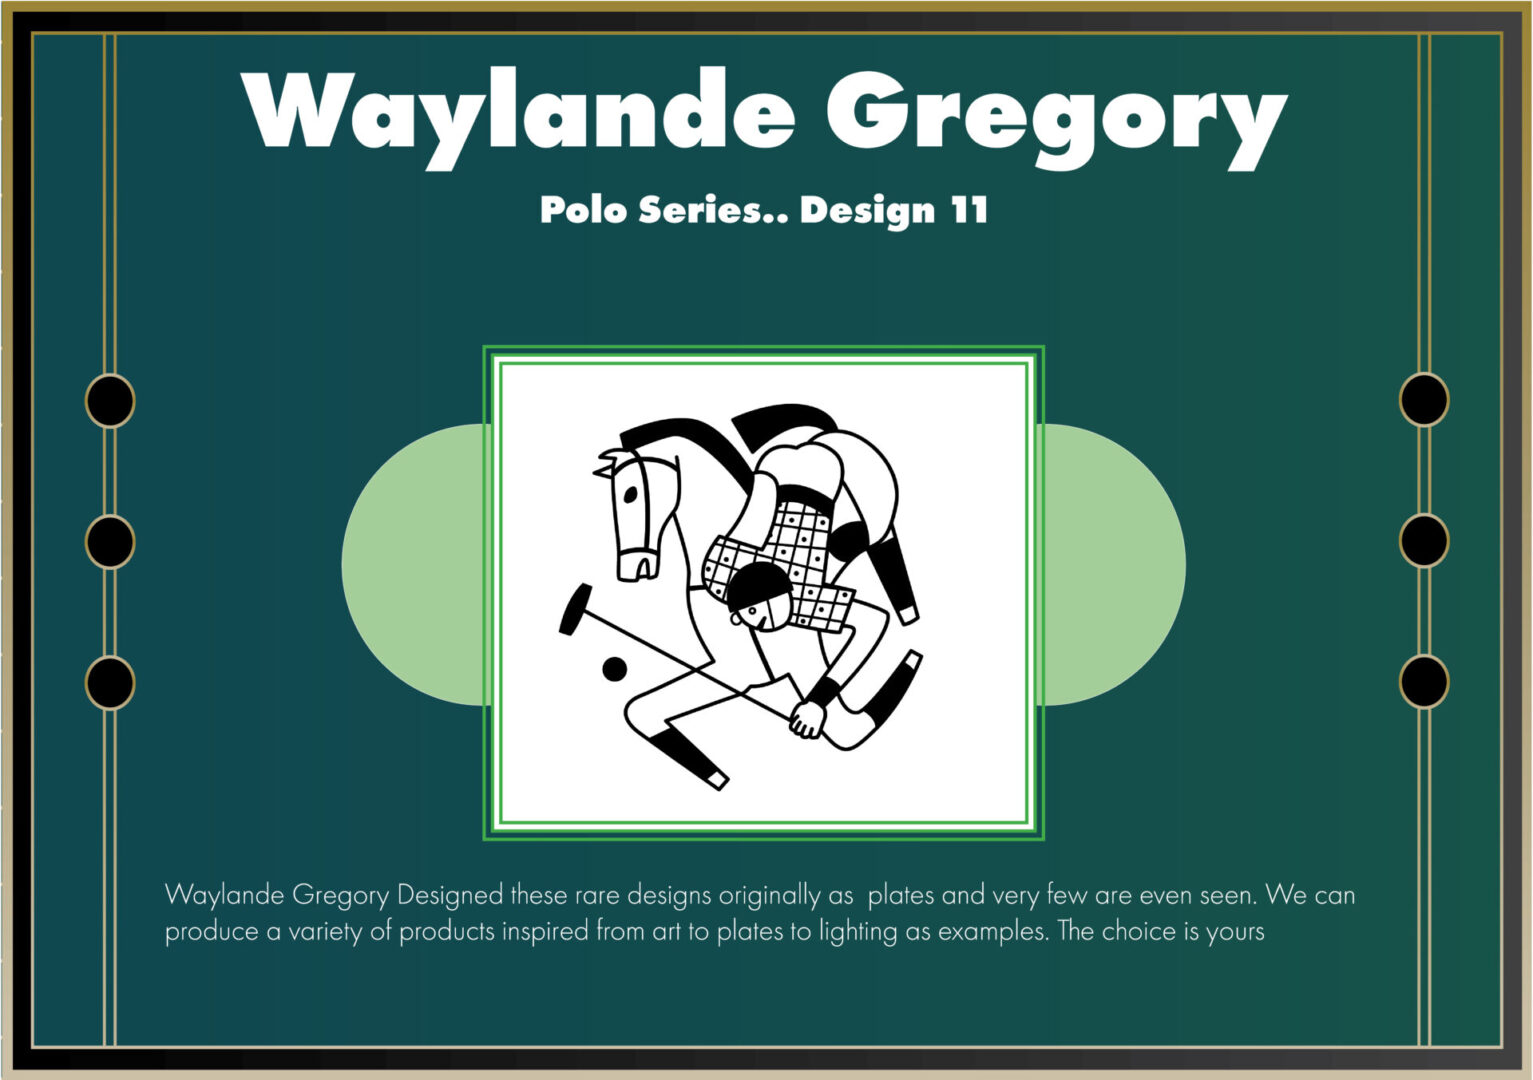 Polo Series exclusive design by Waylande Desantis Gregory